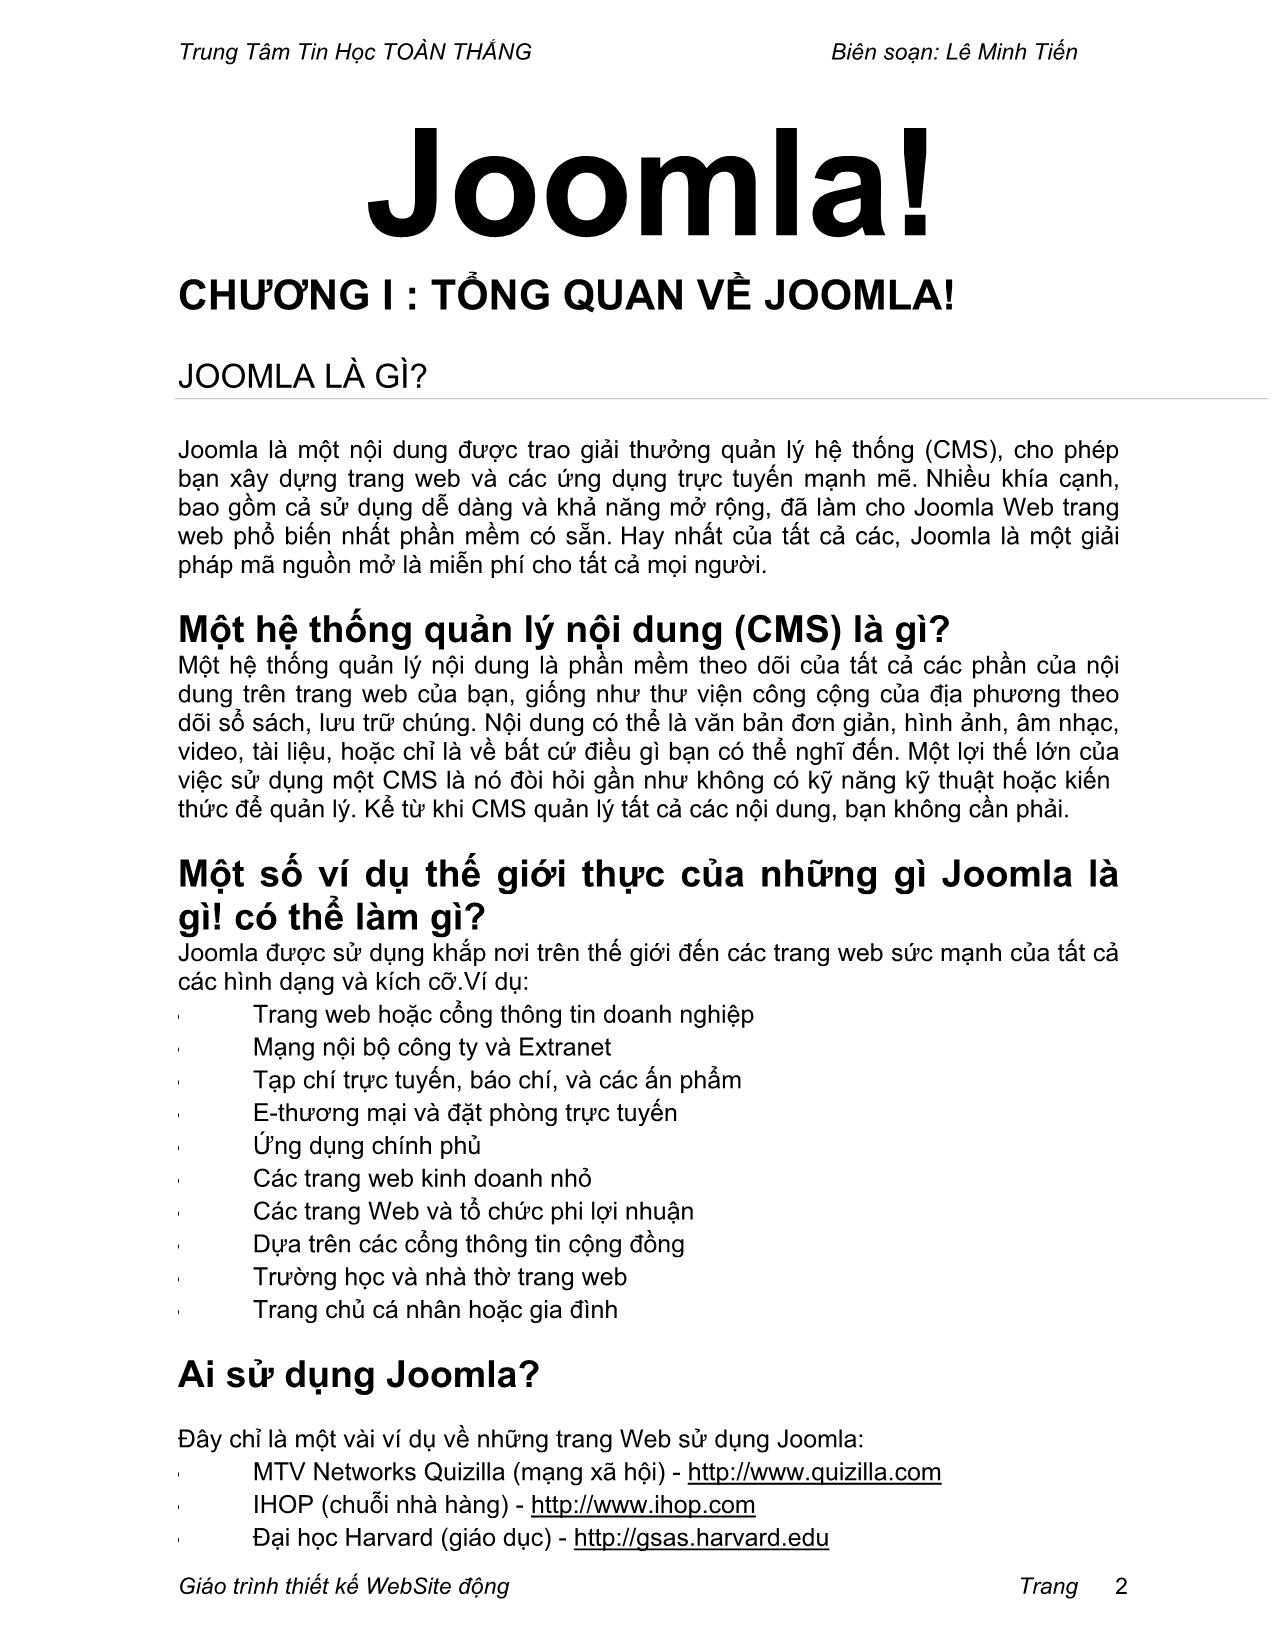 Giáo trình Thiết kế Website động với Joomla (Phần 1) trang 2